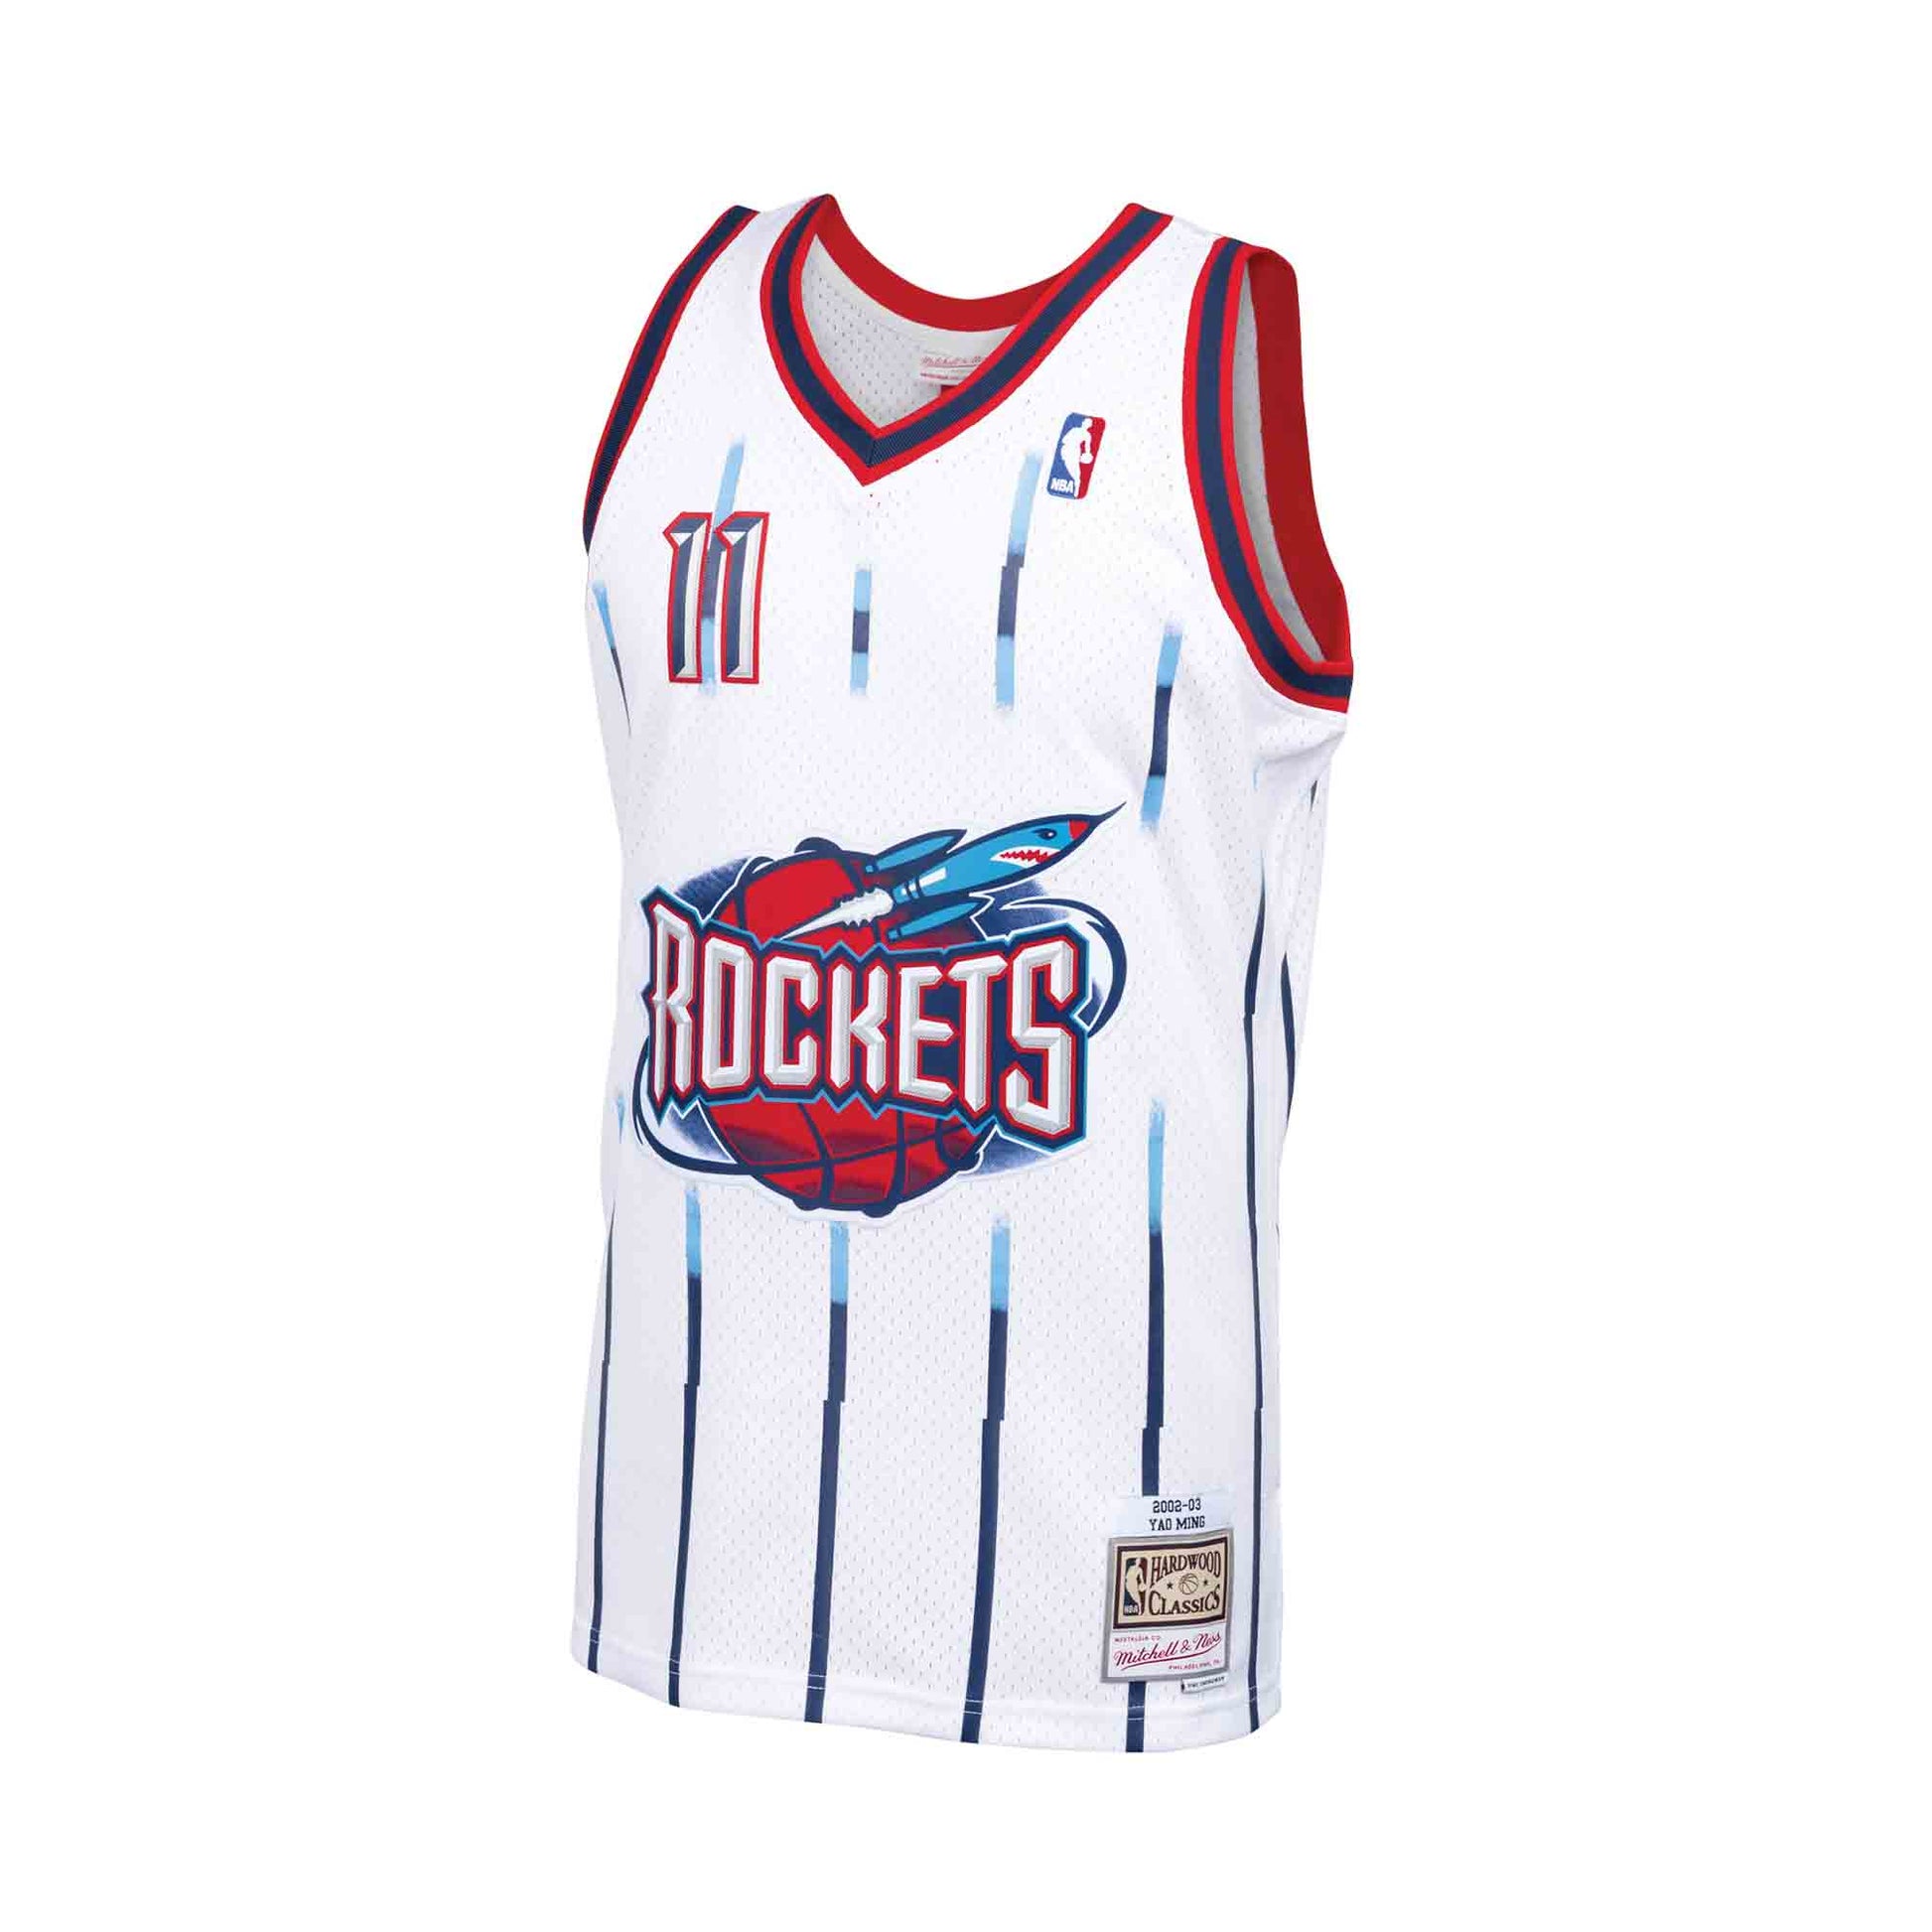 Yao Ming NBA Fan Jerseys for sale